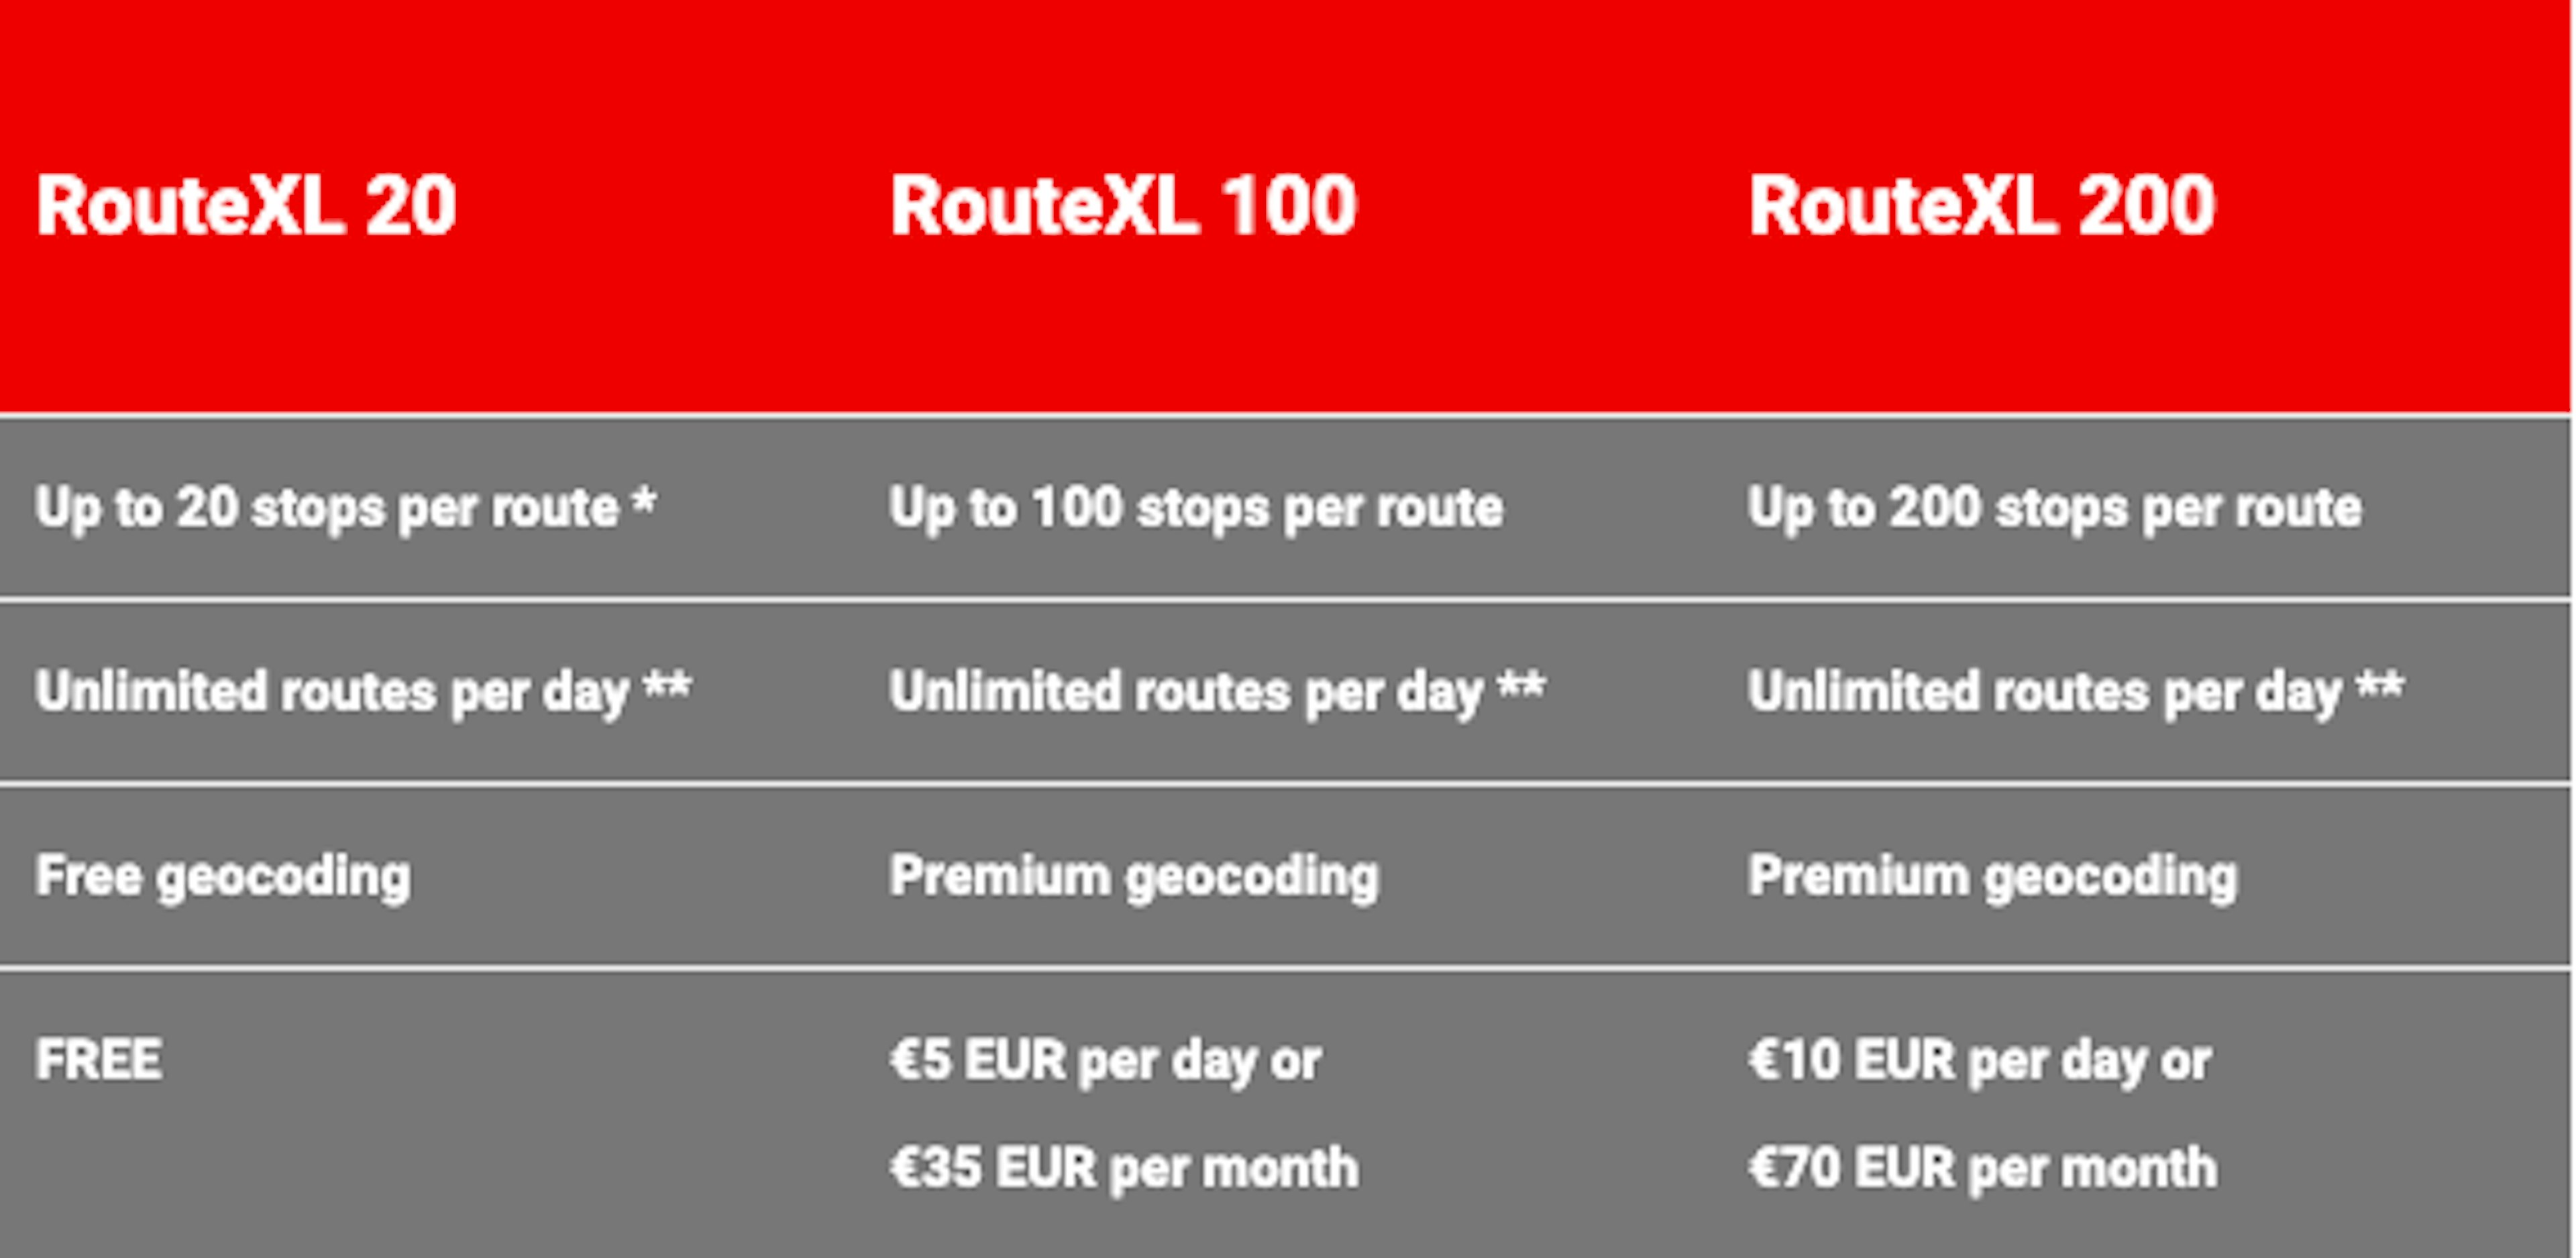 RouteXL 20 is free, RouteXL100 is 5 Euros/day or 35 Euros/month, RouteXL 200 is 10 Euros per day or 70 Euros per month. 